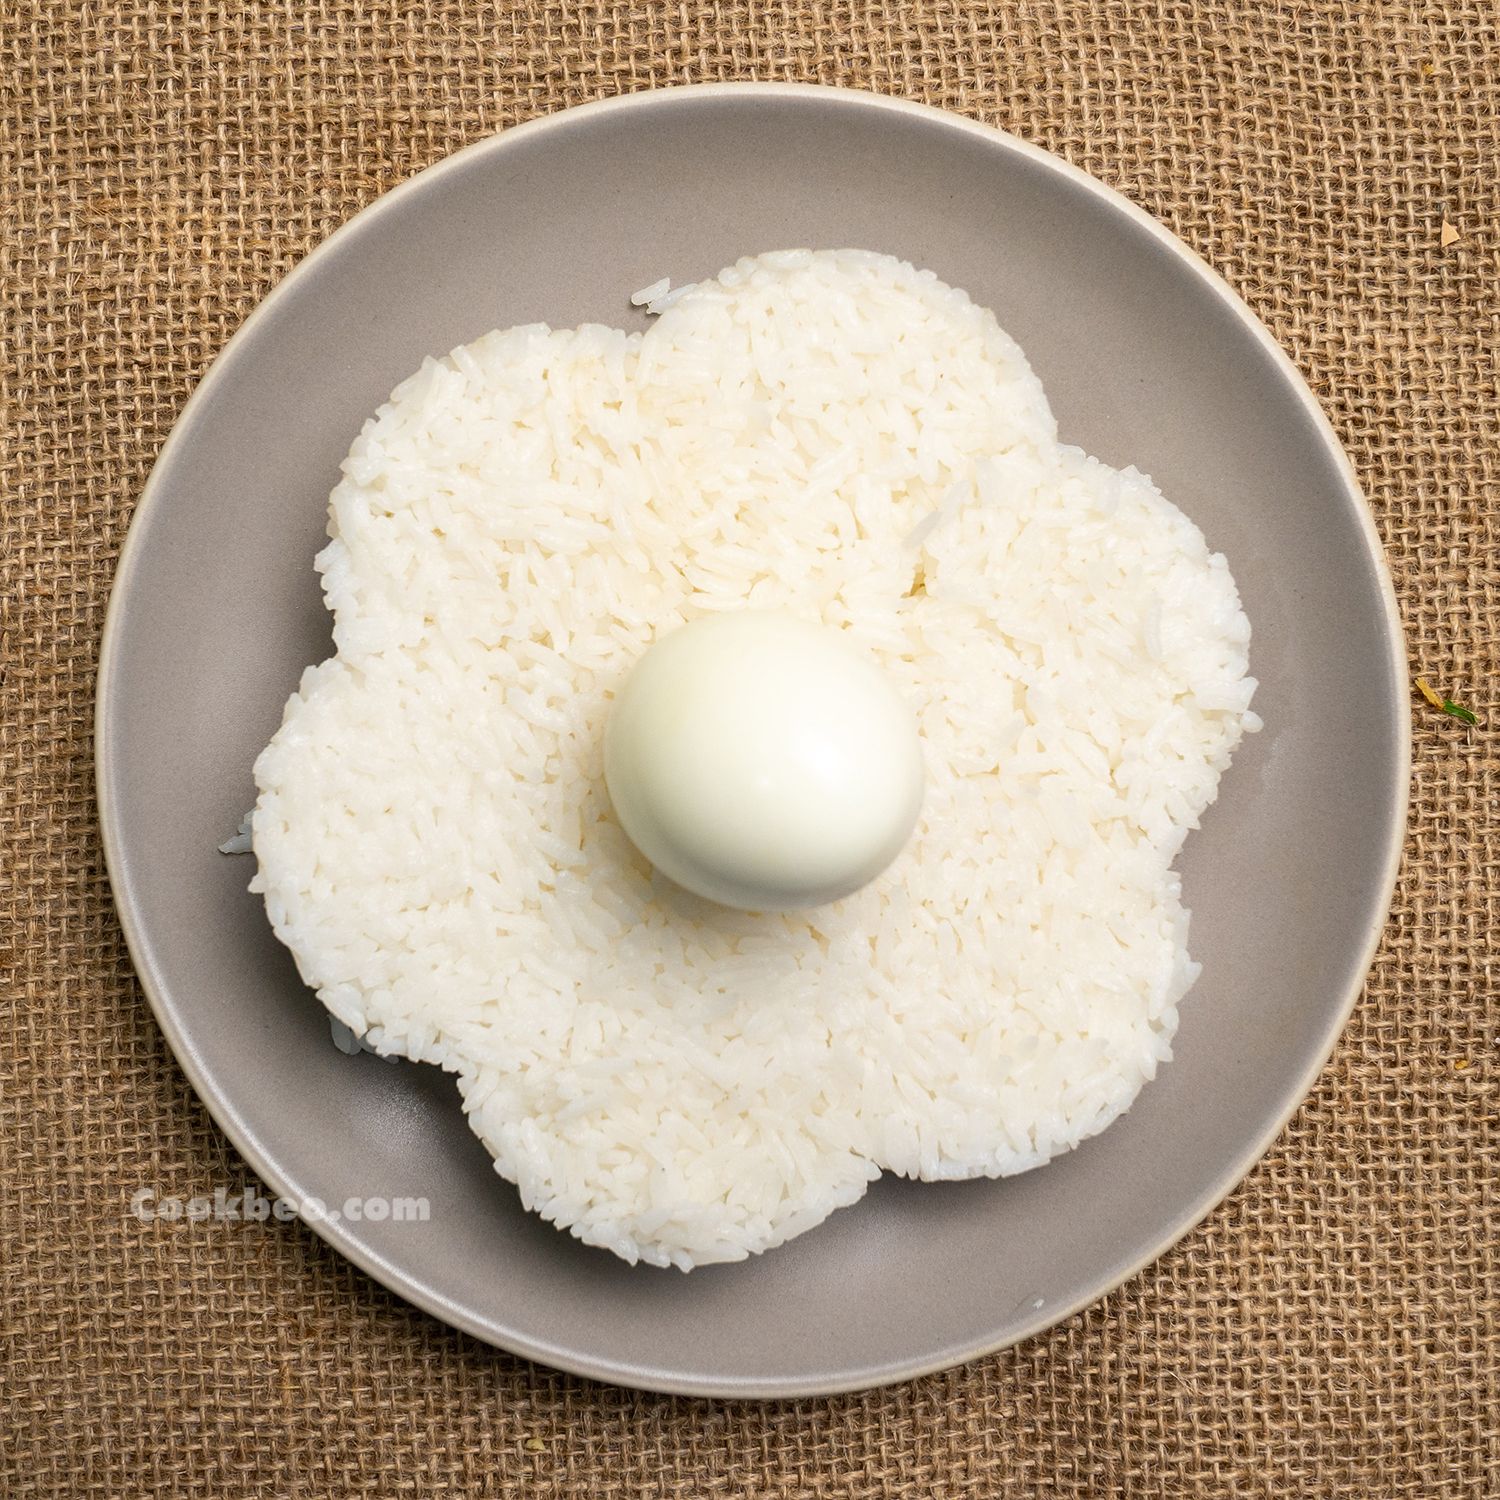 đĩa cơm trắng và trứng gà luộc